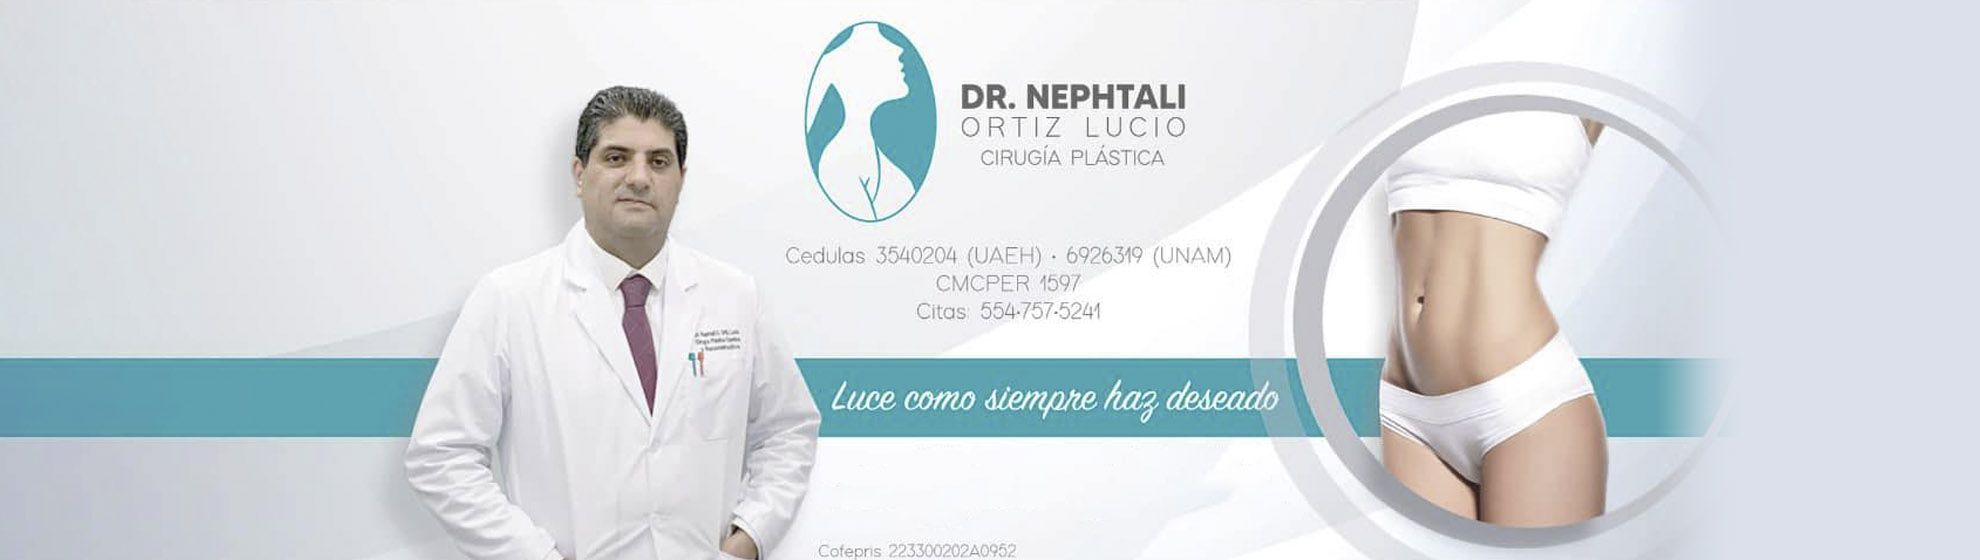 Dr. Nephtali Alfonso Ortiz Lucio